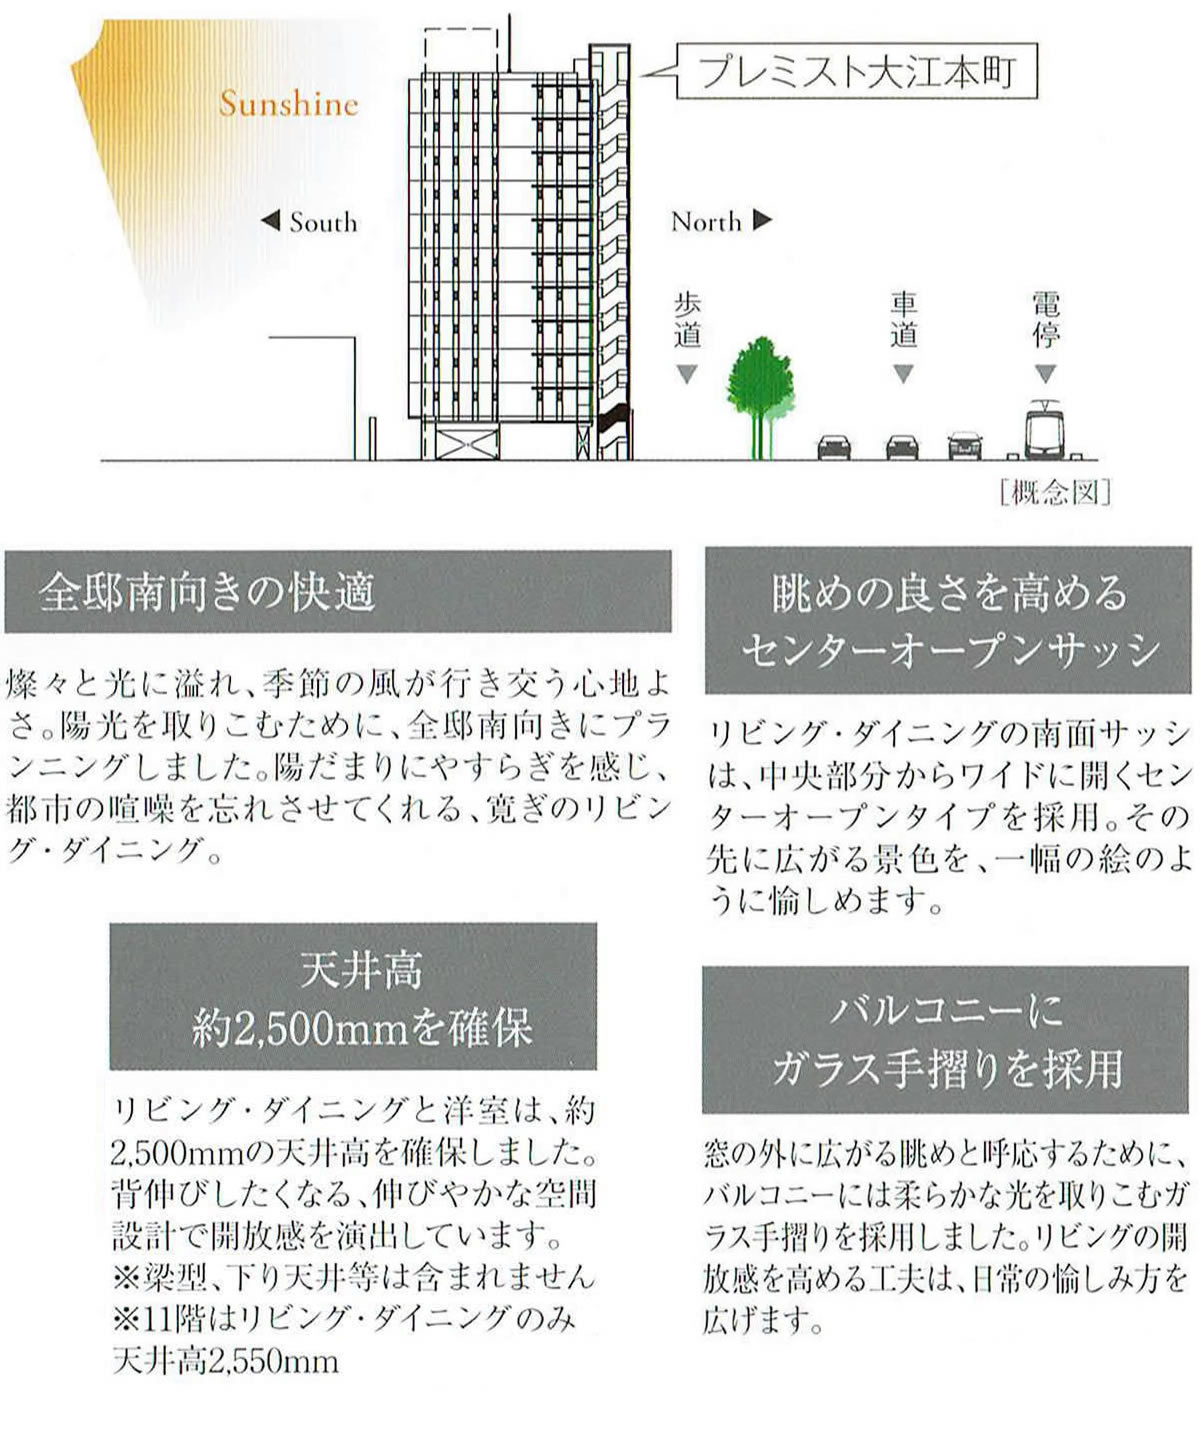 熊本市中央区マンション・プレミスト大江本町分譲販売パンフレットのリビング説明